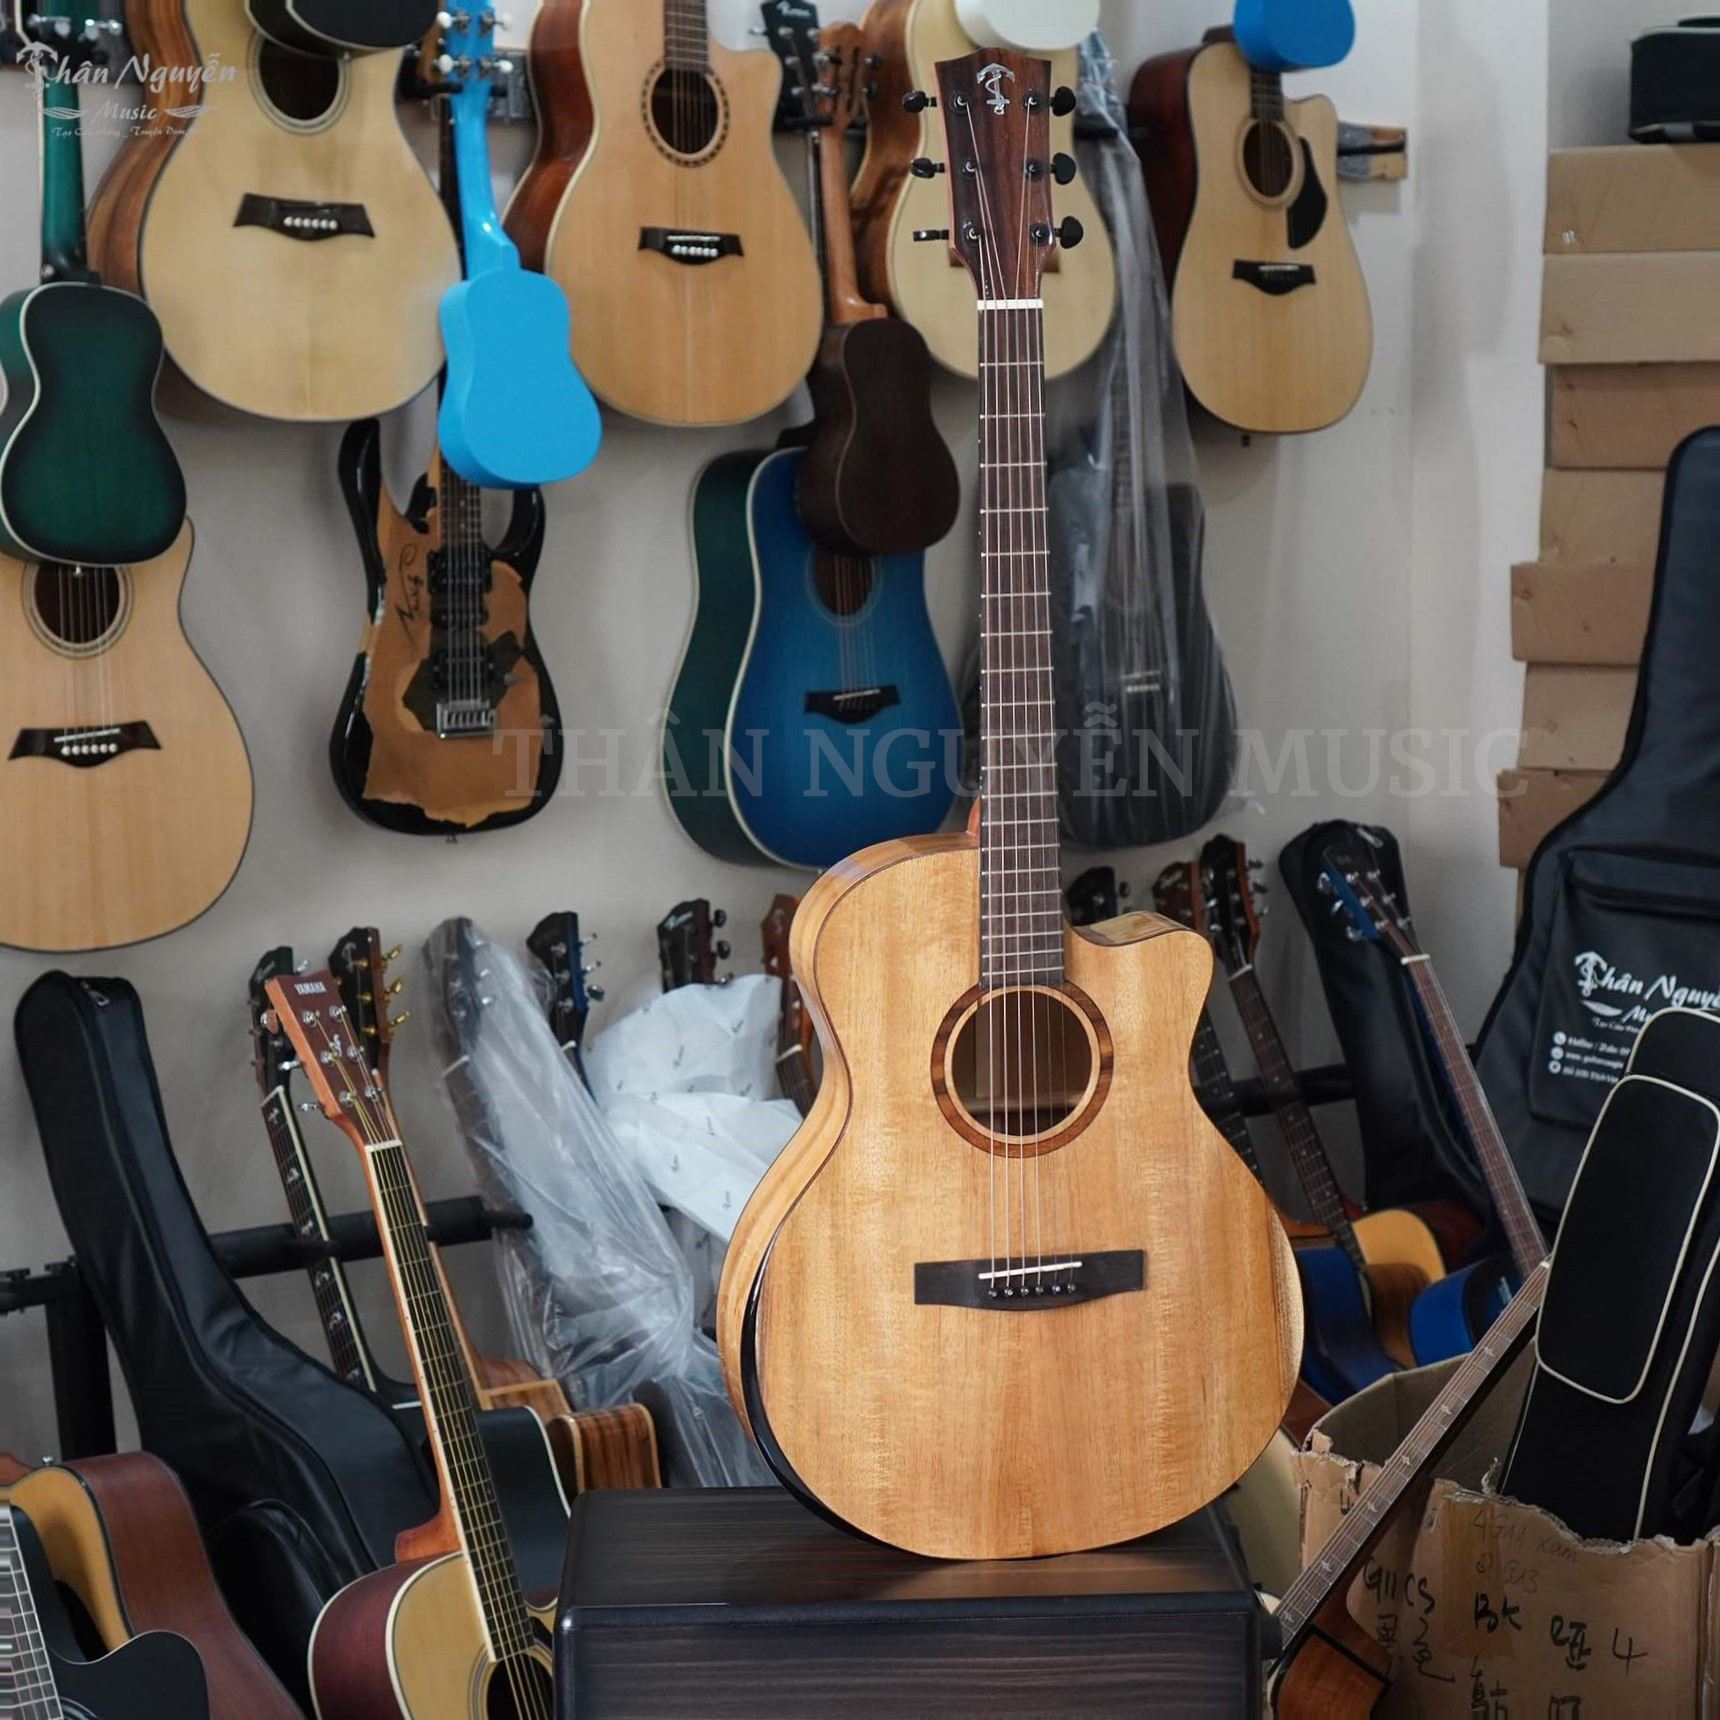 Shop Guitar Phú Xuyên Hà Nội, Cửa hàng Bán Guitar, Sửa đàn Guitar Uy Tín Hà Nội